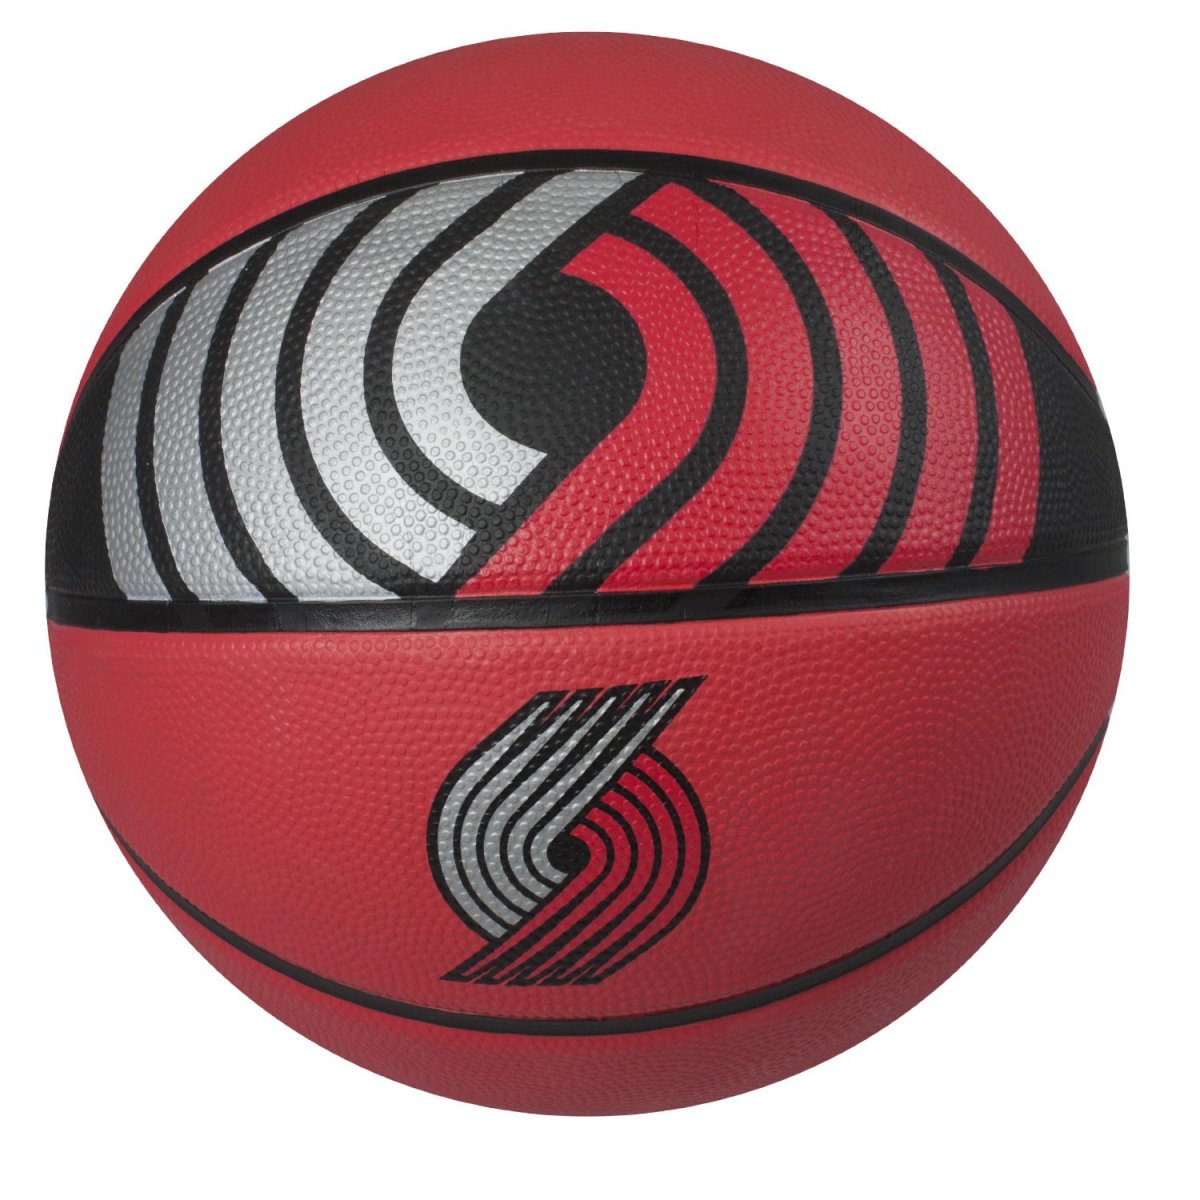 Баскетбольный мяч в игре